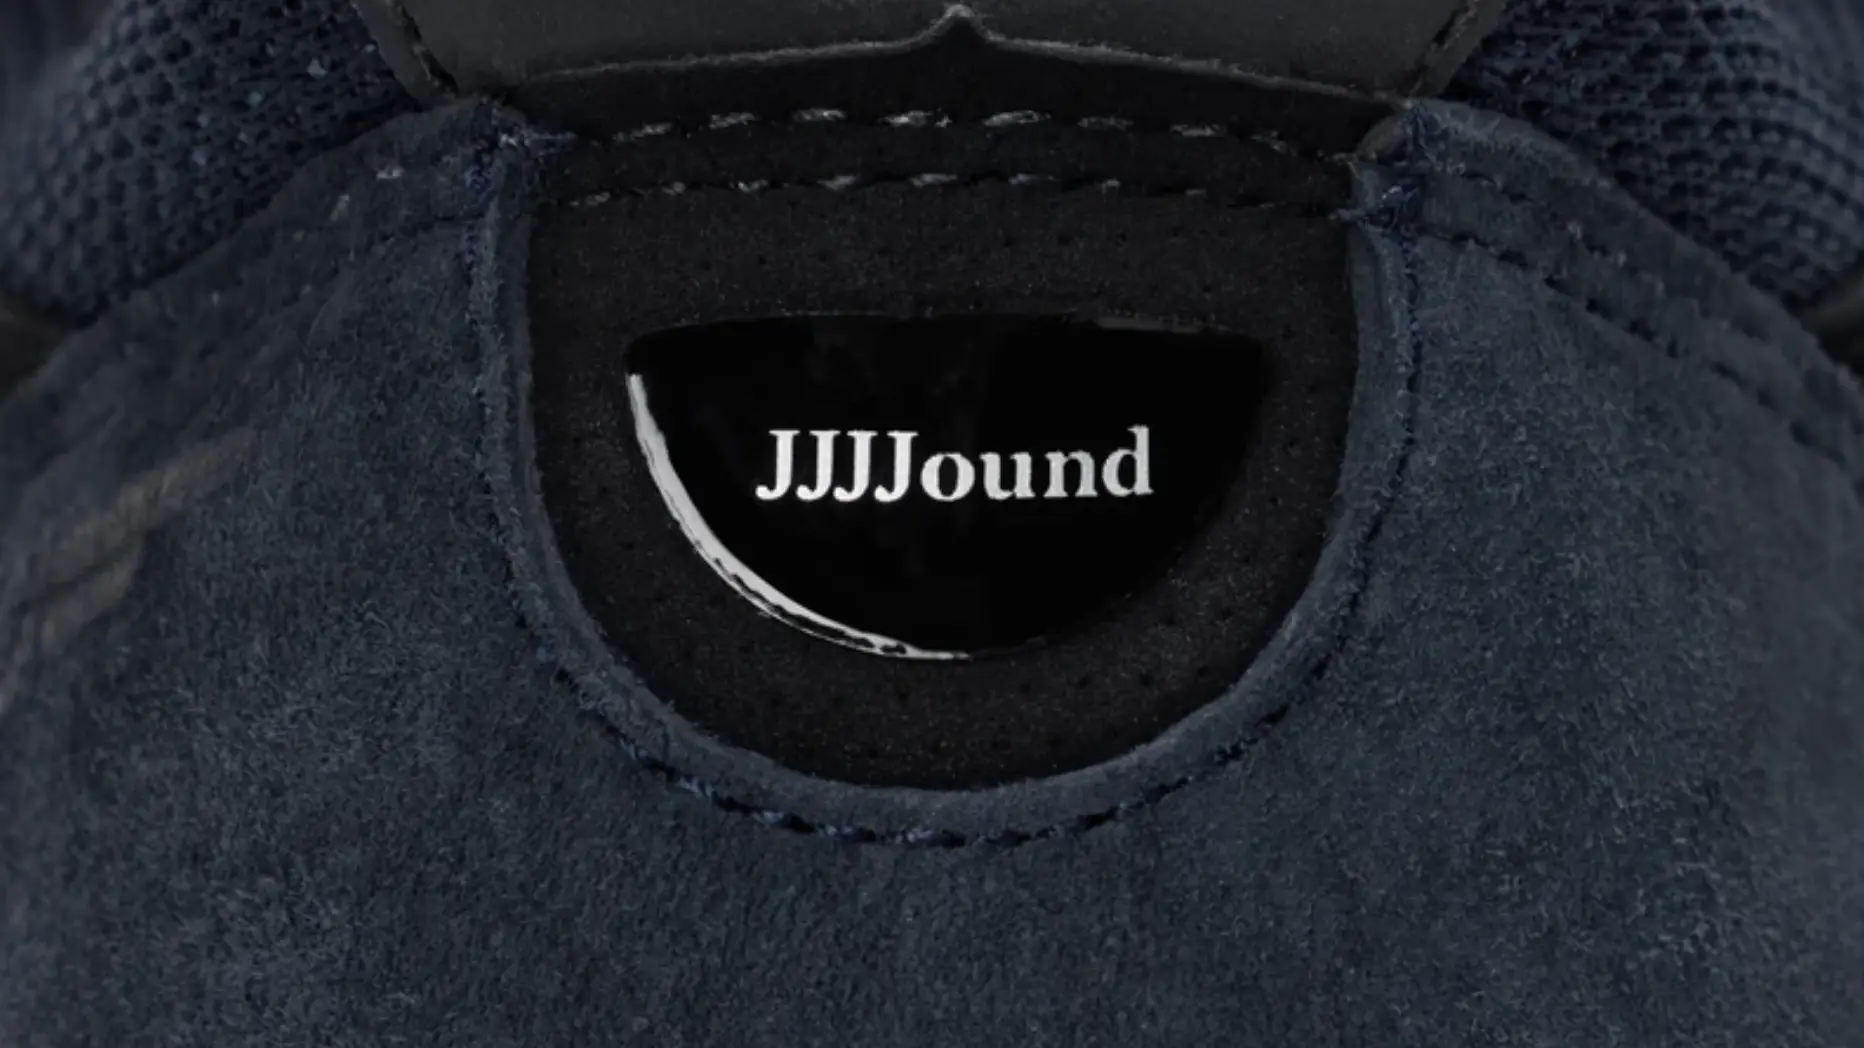 The JJJJound x New Balance 990v4 